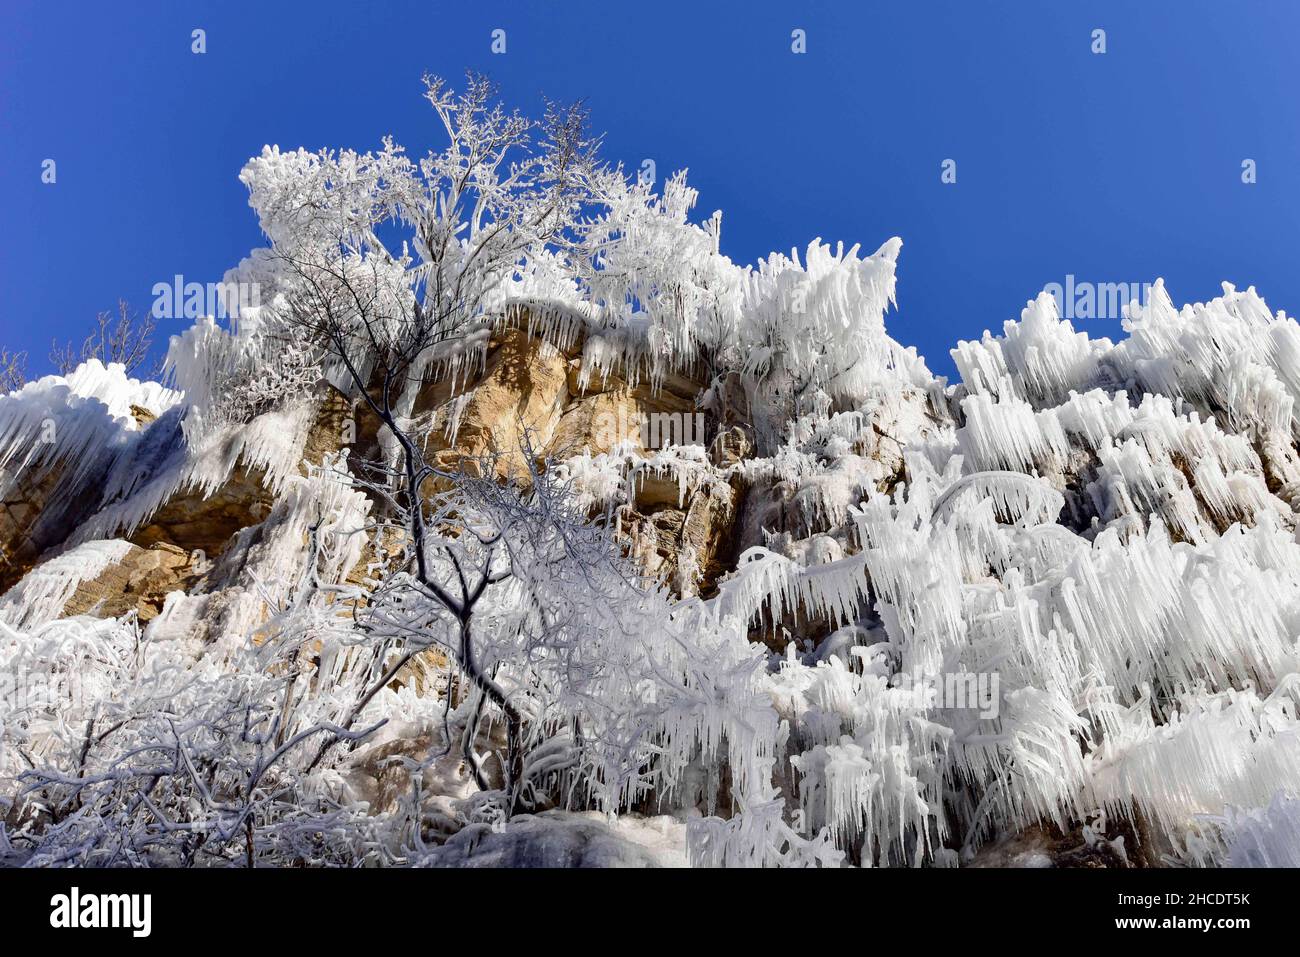 QINGZHOU, CHINA - 28. DEZEMBER 2021 - am 28. Dezember 2 wird ein Eisfall am malerischen Ort am Berg Tianci in der Stadt Qingzhou, Provinz Shandong, China, gesehen Stockfoto